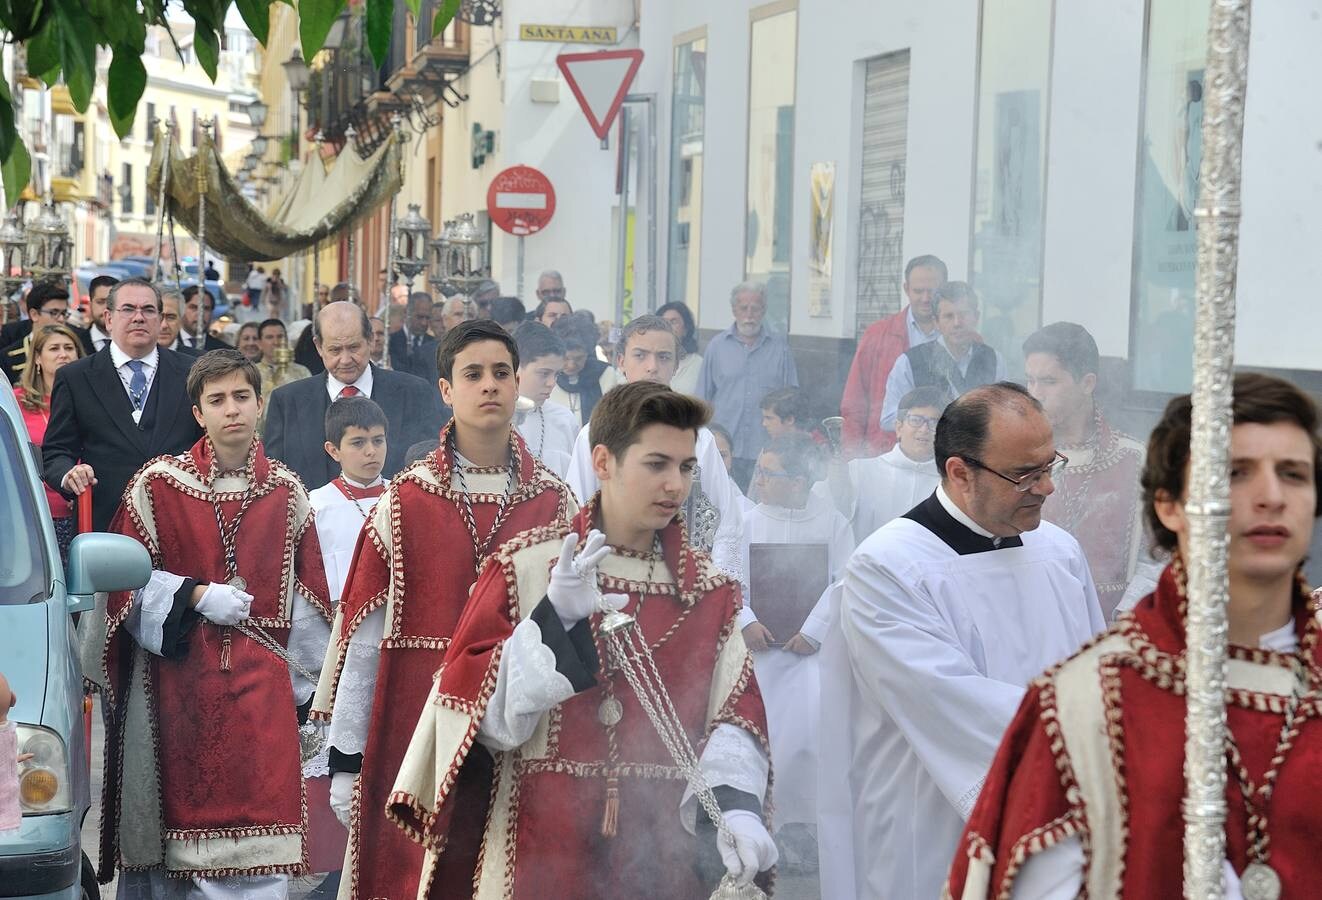 Galería de las procesiones sacramentales